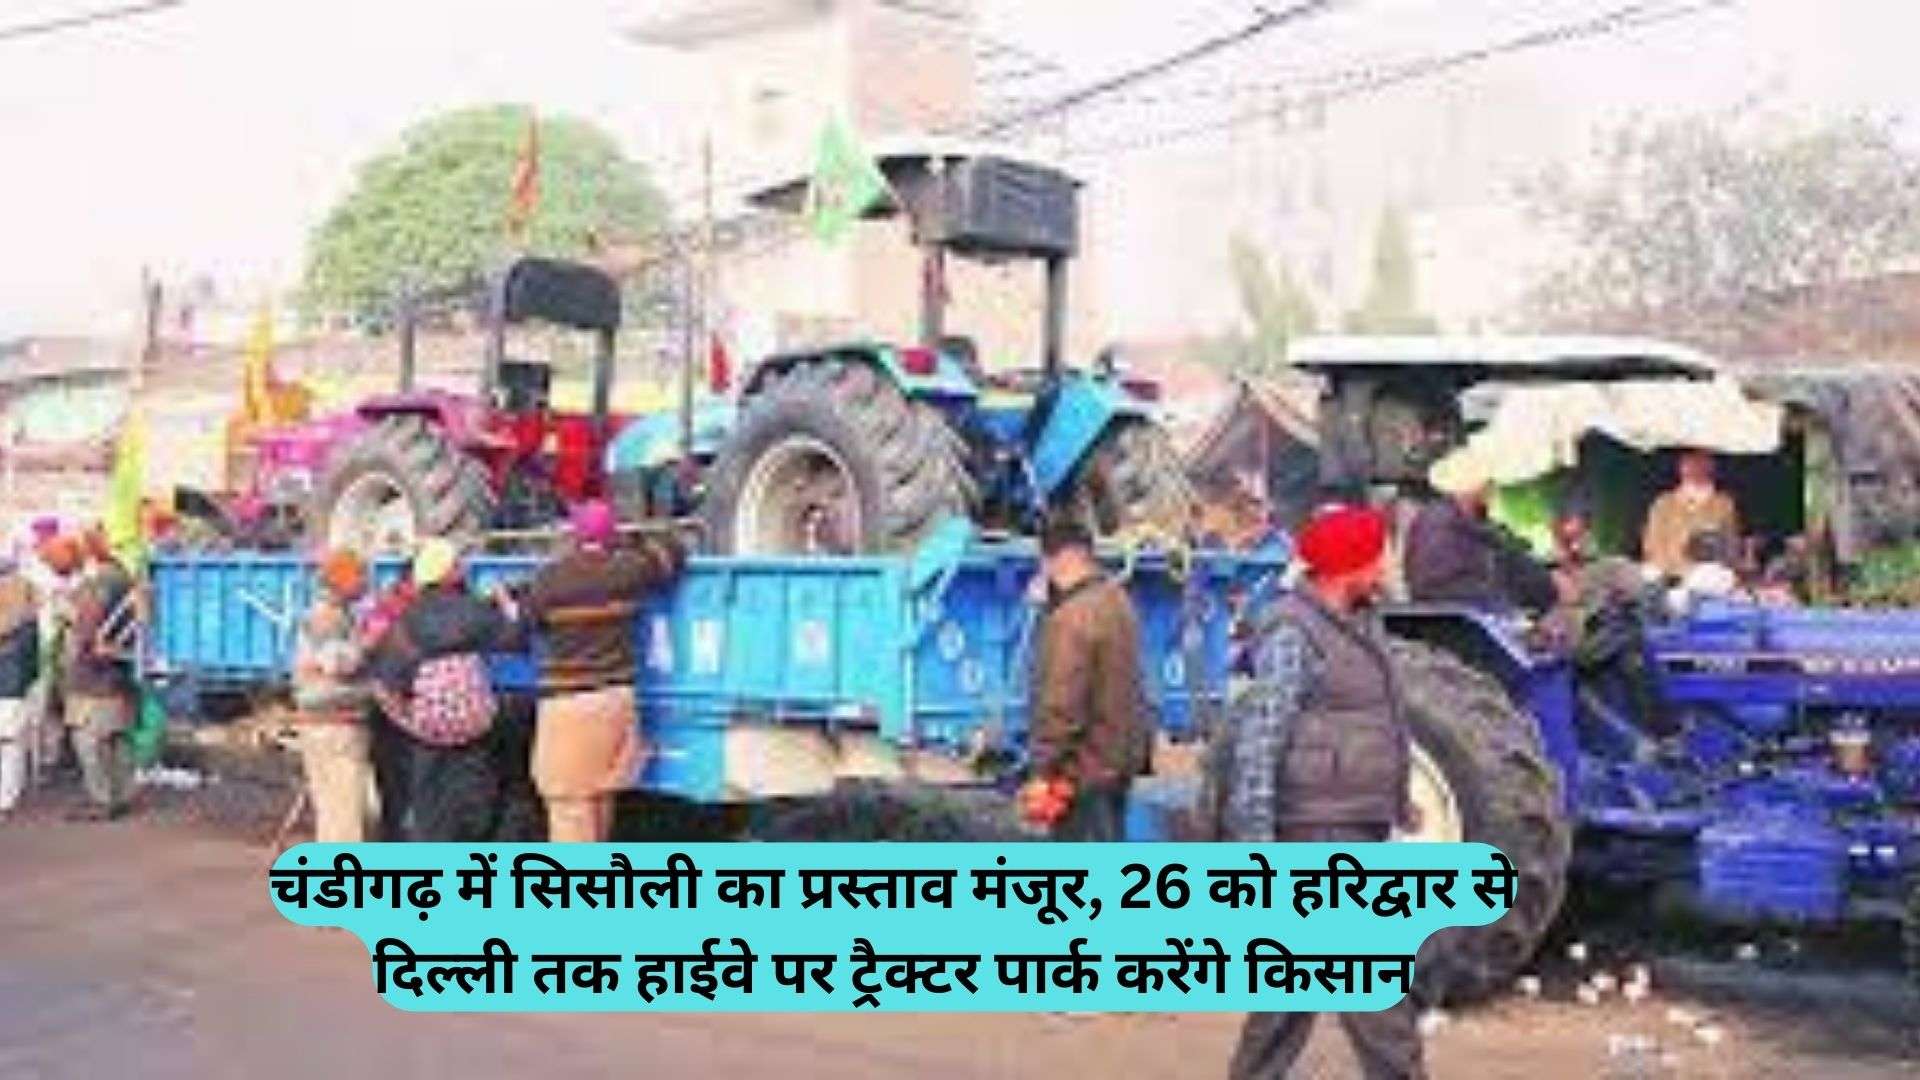 BKU: चंडीगढ़ में सिसौली का प्रस्ताव मंजूर, 26 को हरिद्वार से दिल्ली तक हाईवे पर ट्रैक्टर पार्क करेंगे किसान